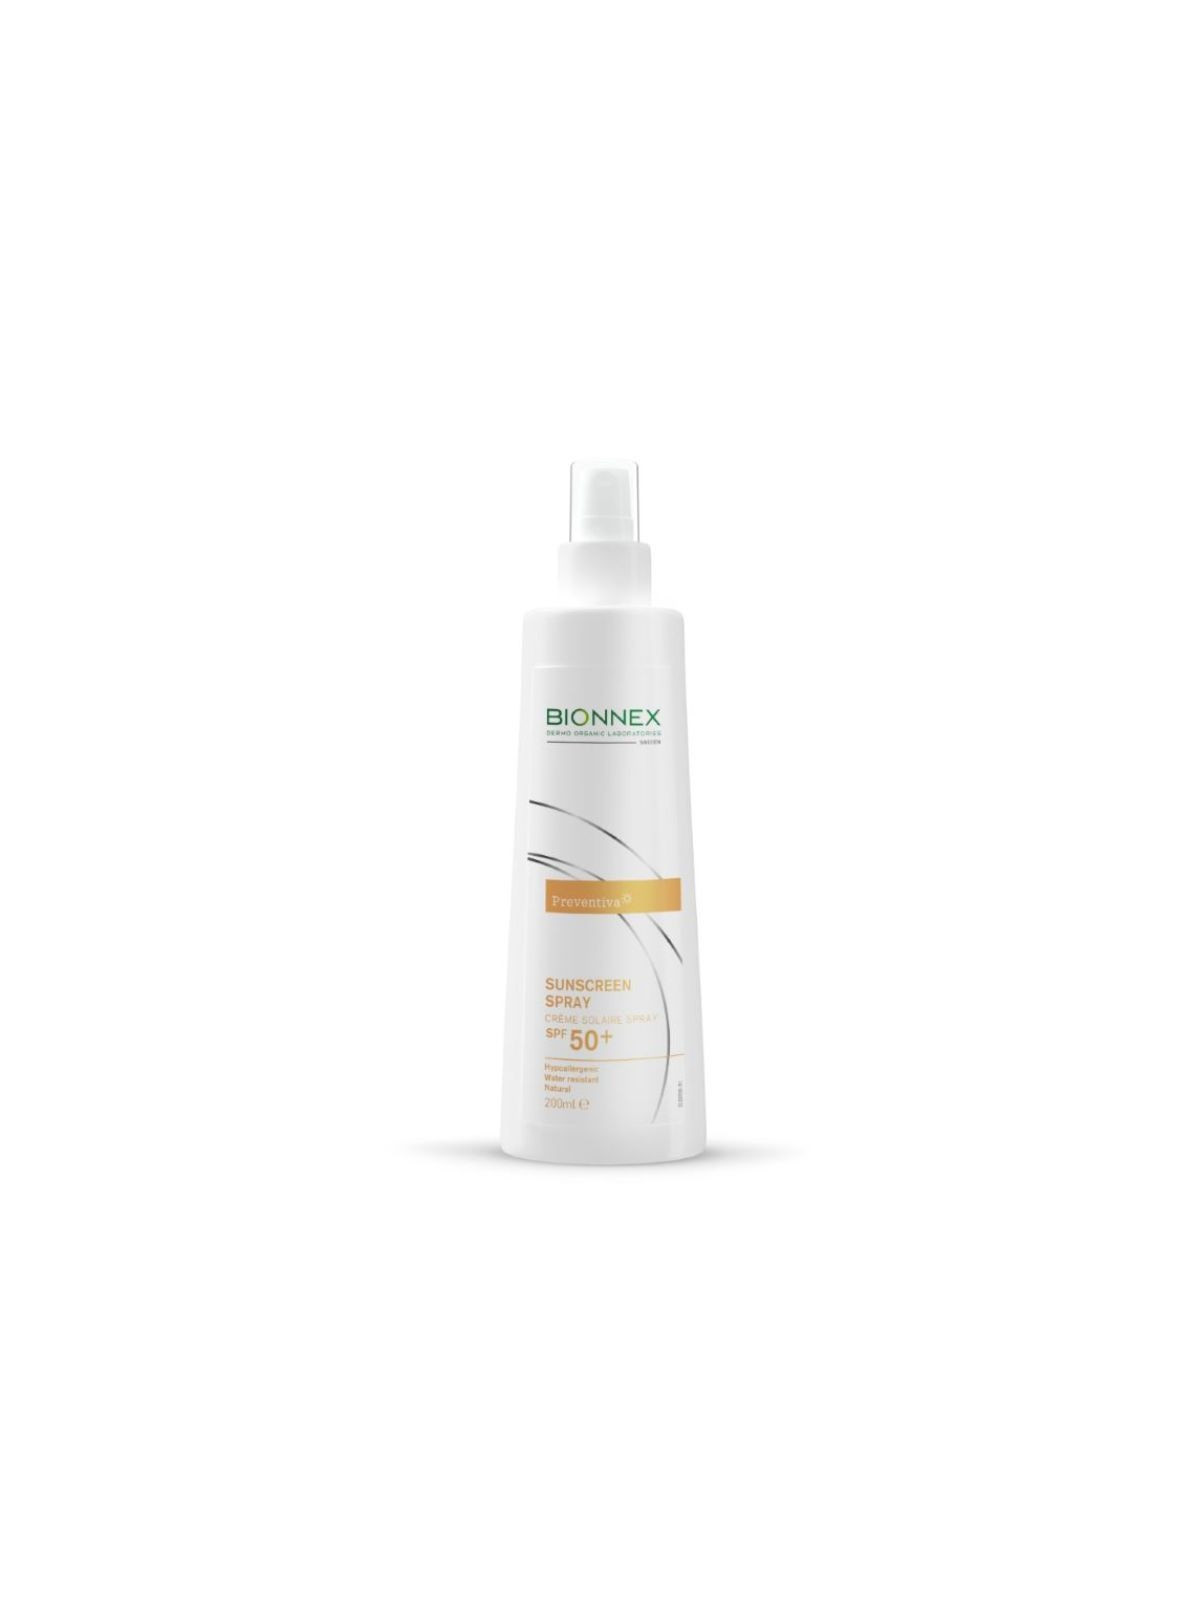 Apsauginis purškalas nuo saulės SPF 50+ Bionnex Sunscreen Spray  200 ml